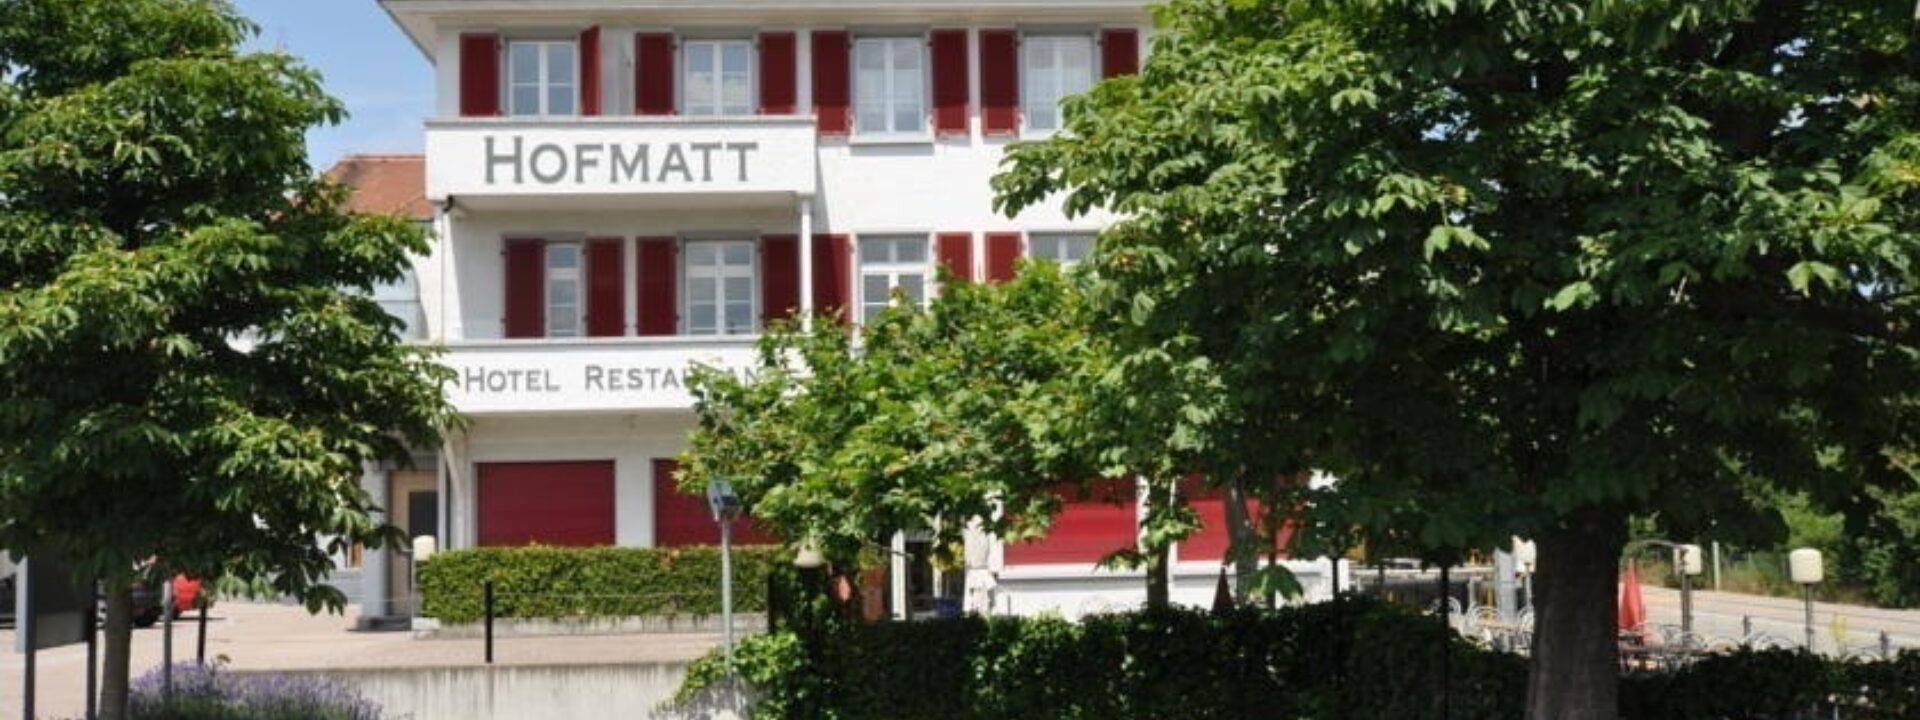 Hotel Hofmatt